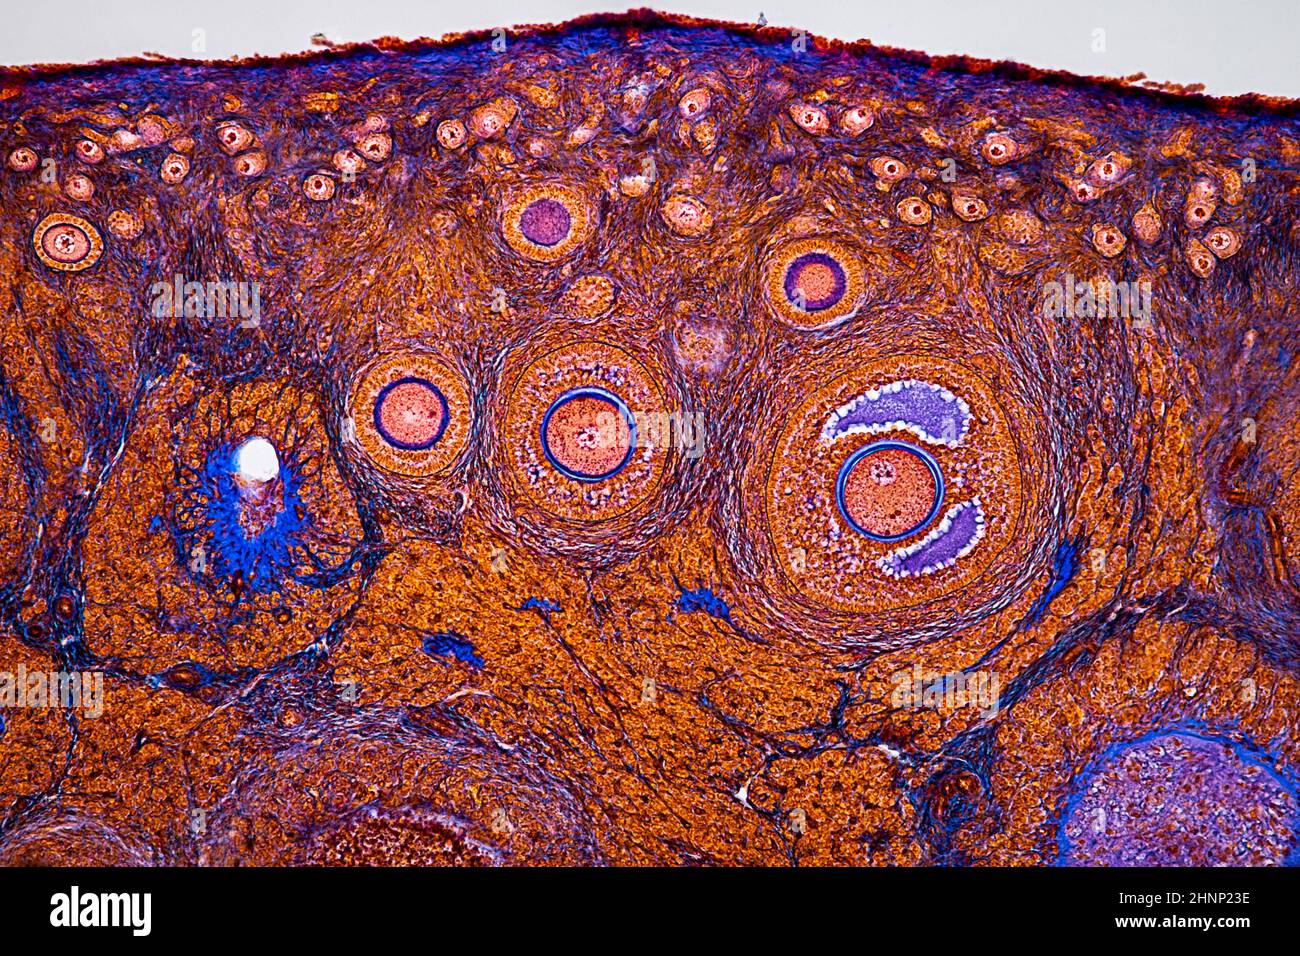 image histologique d'un ovaire montrant des follicules primaires, secondaires et terciaires (grossissement de 100x) Banque D'Images